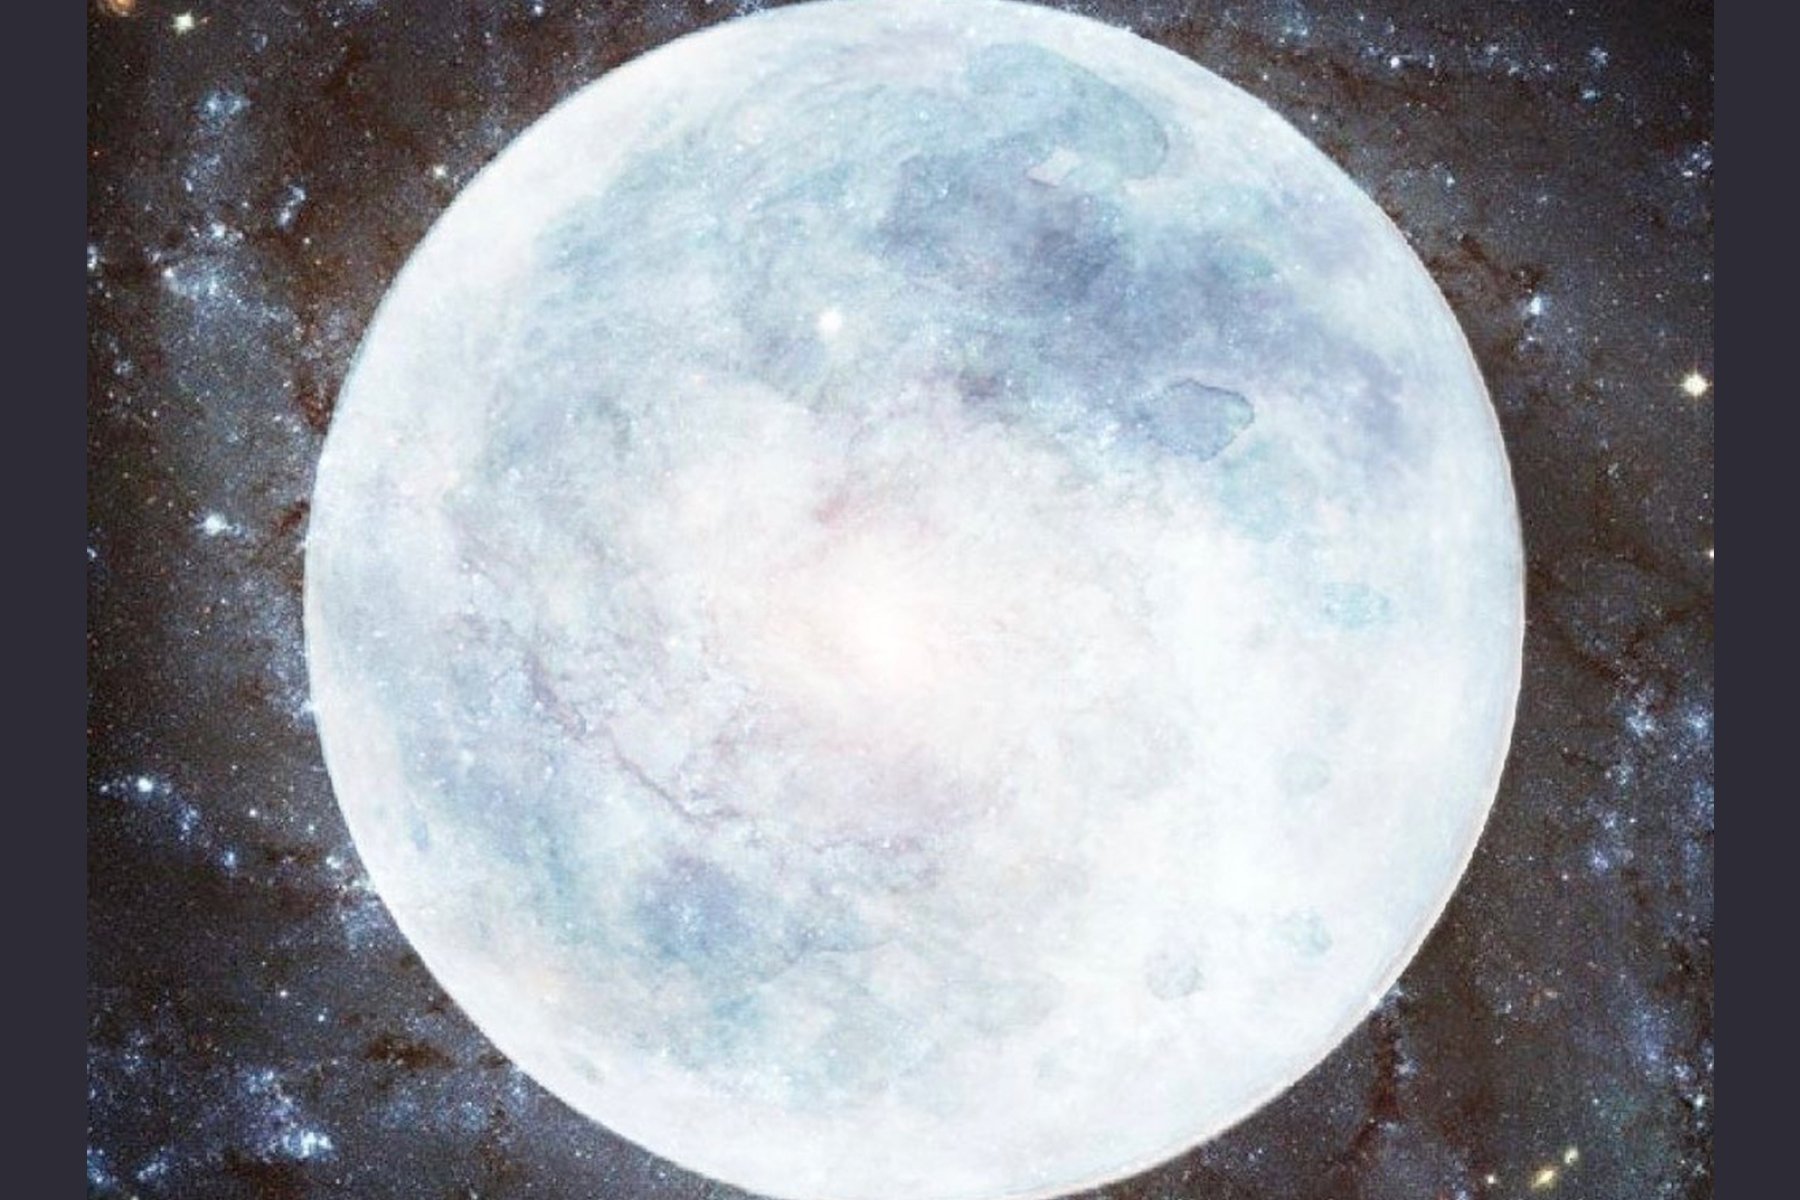 February 2021 Full Moon in Virgo Horoscopes